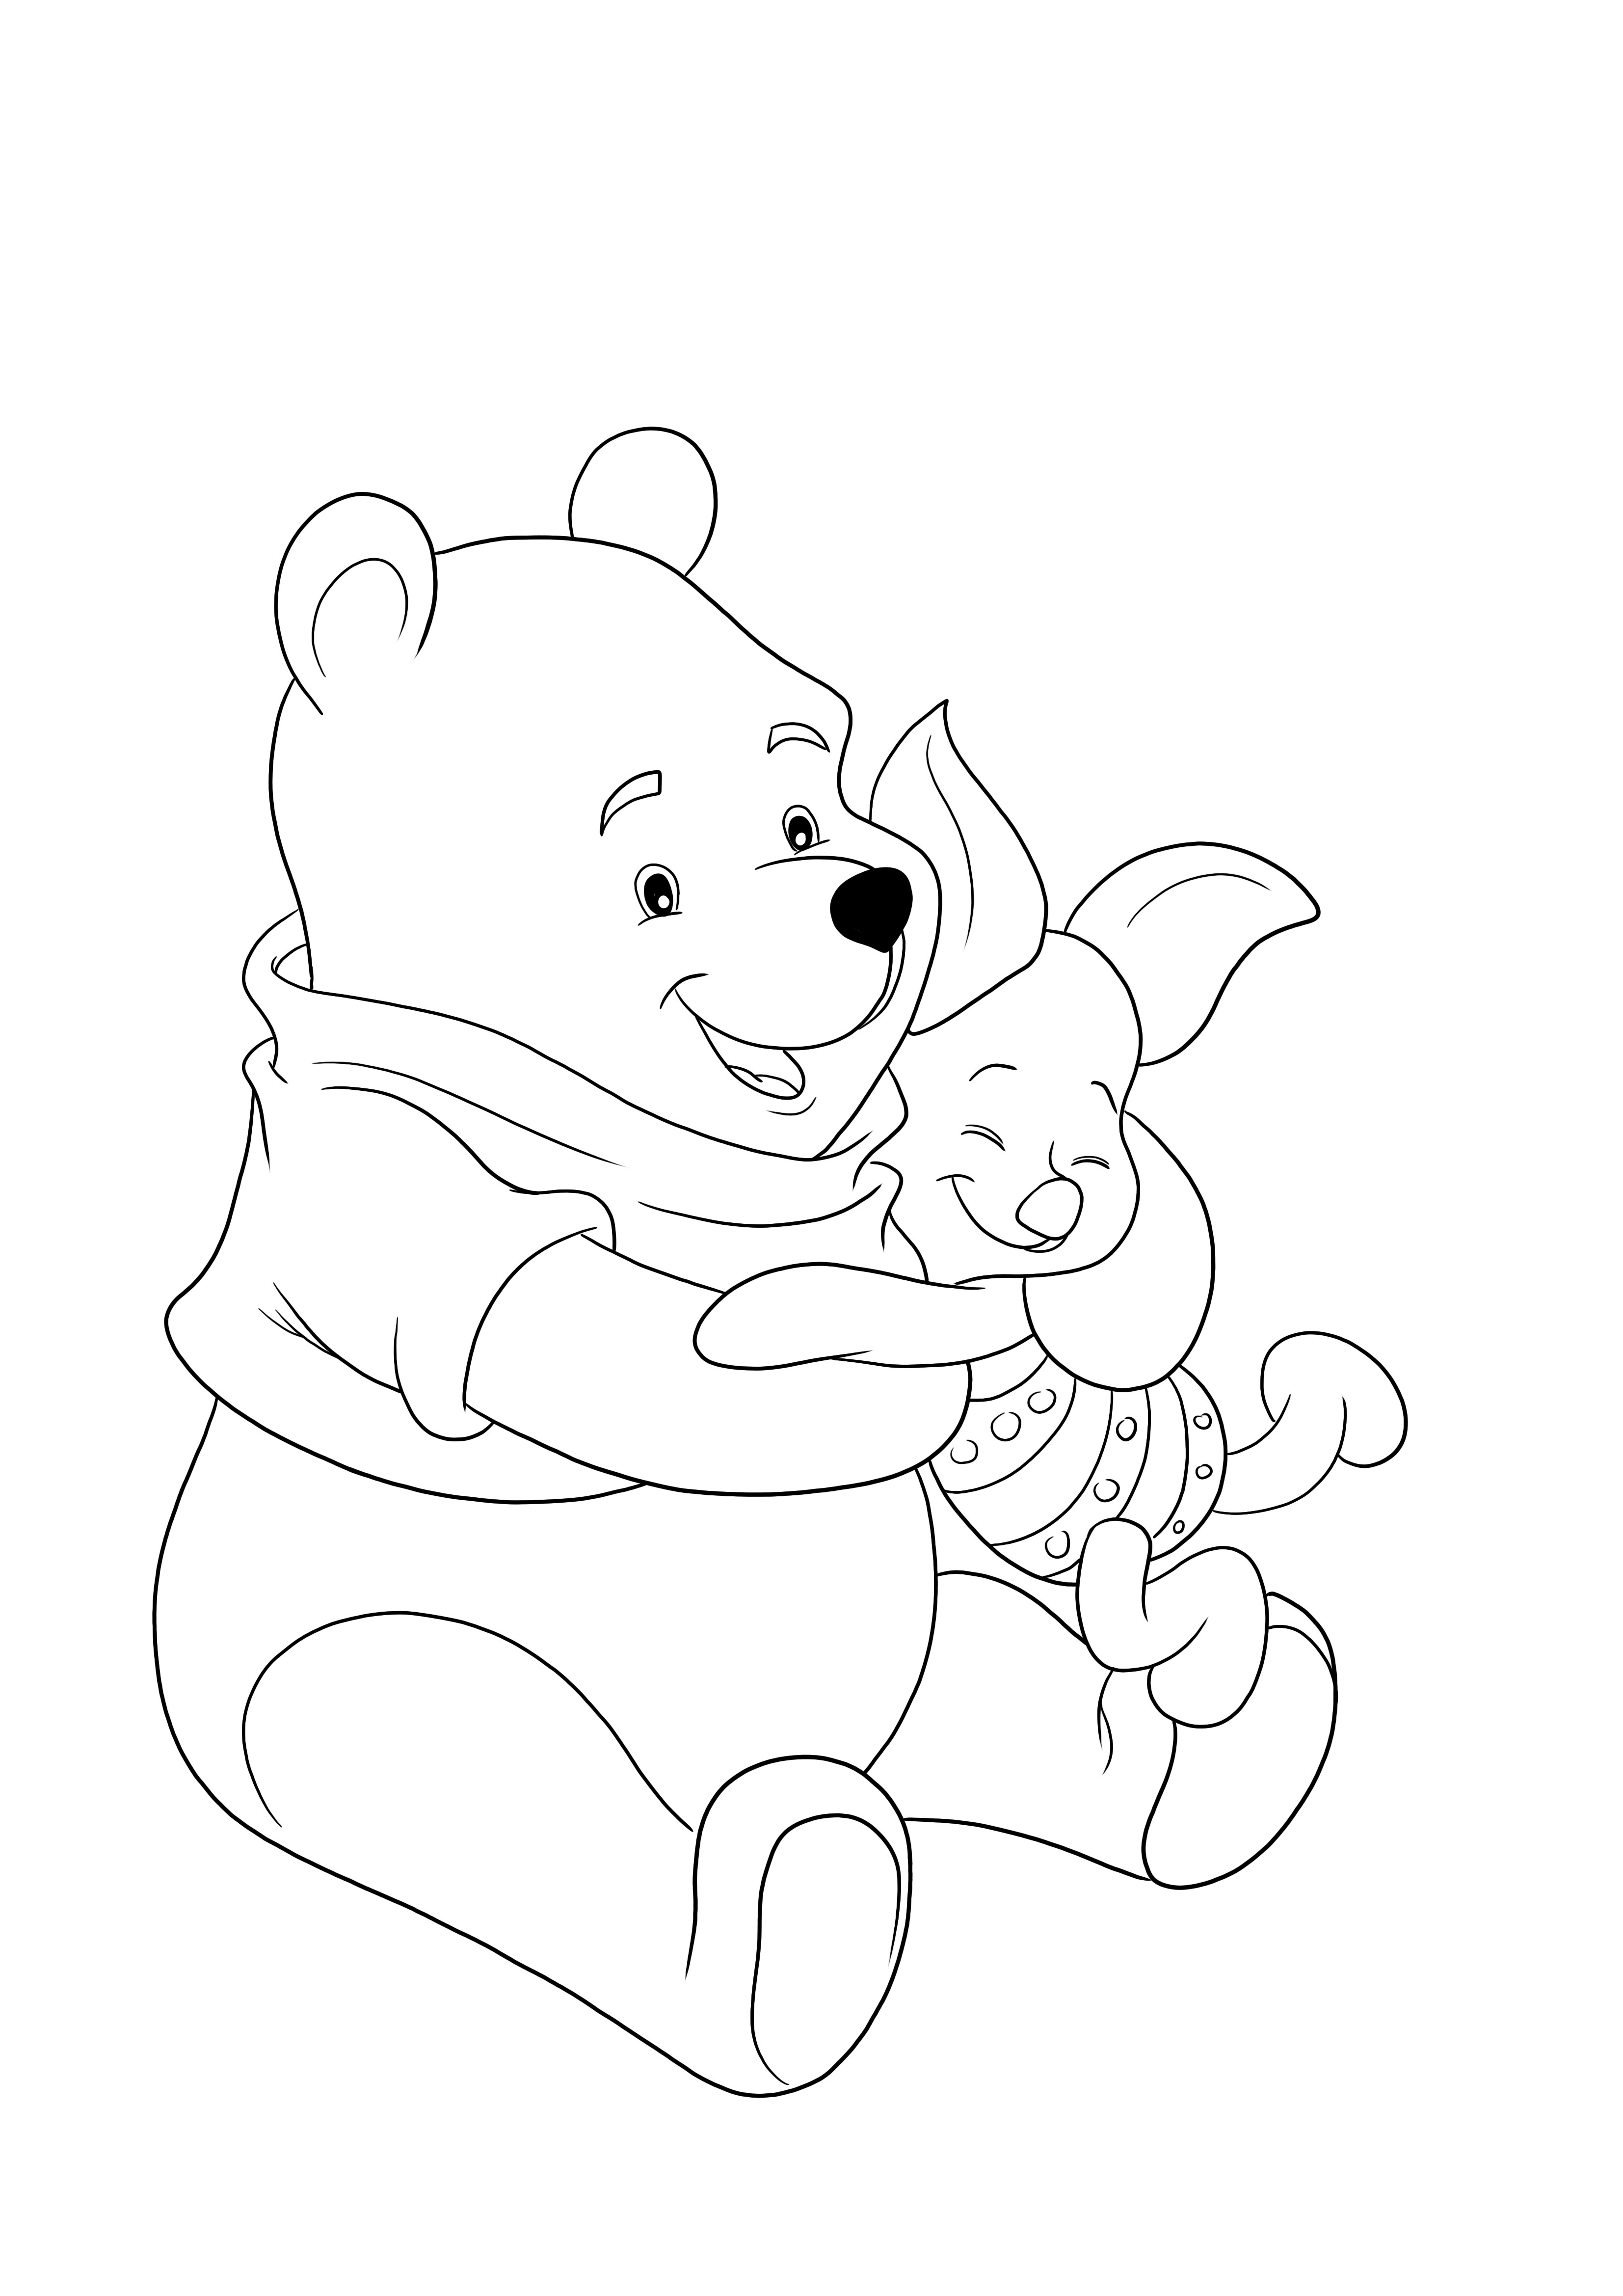 Pagina da colorare di simpatici Winnie e Pimpi che si abbracciano gratis da stampare o scaricare